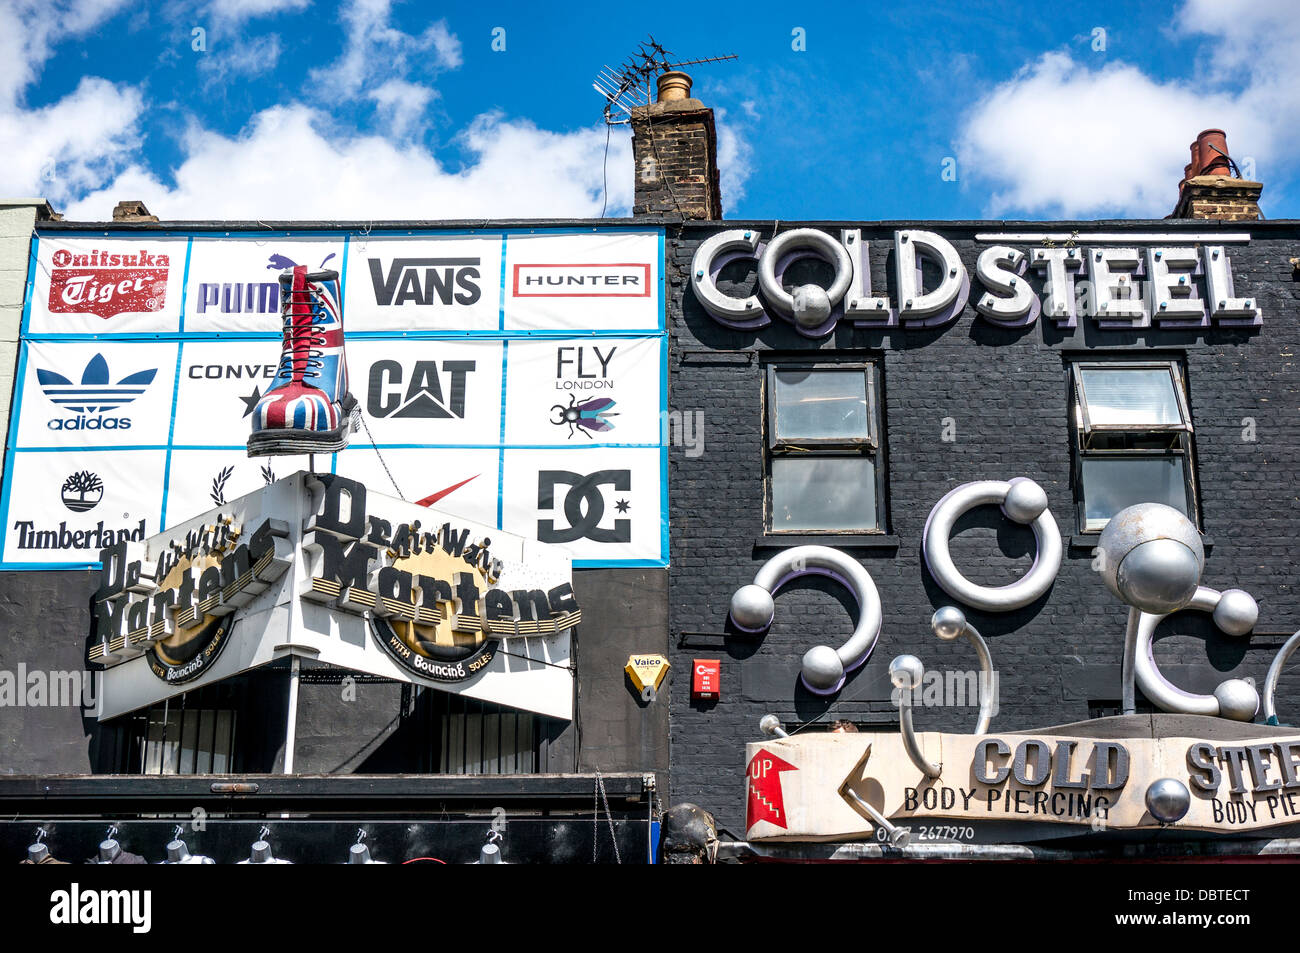 Due sorprendenti negozi accanto a ogni altro: freddo Acciaio body piercing e un negozio di scarpe, su Camden High Street, vicino a Camden Market, Londra, Inghilterra, Regno Unito. Foto Stock